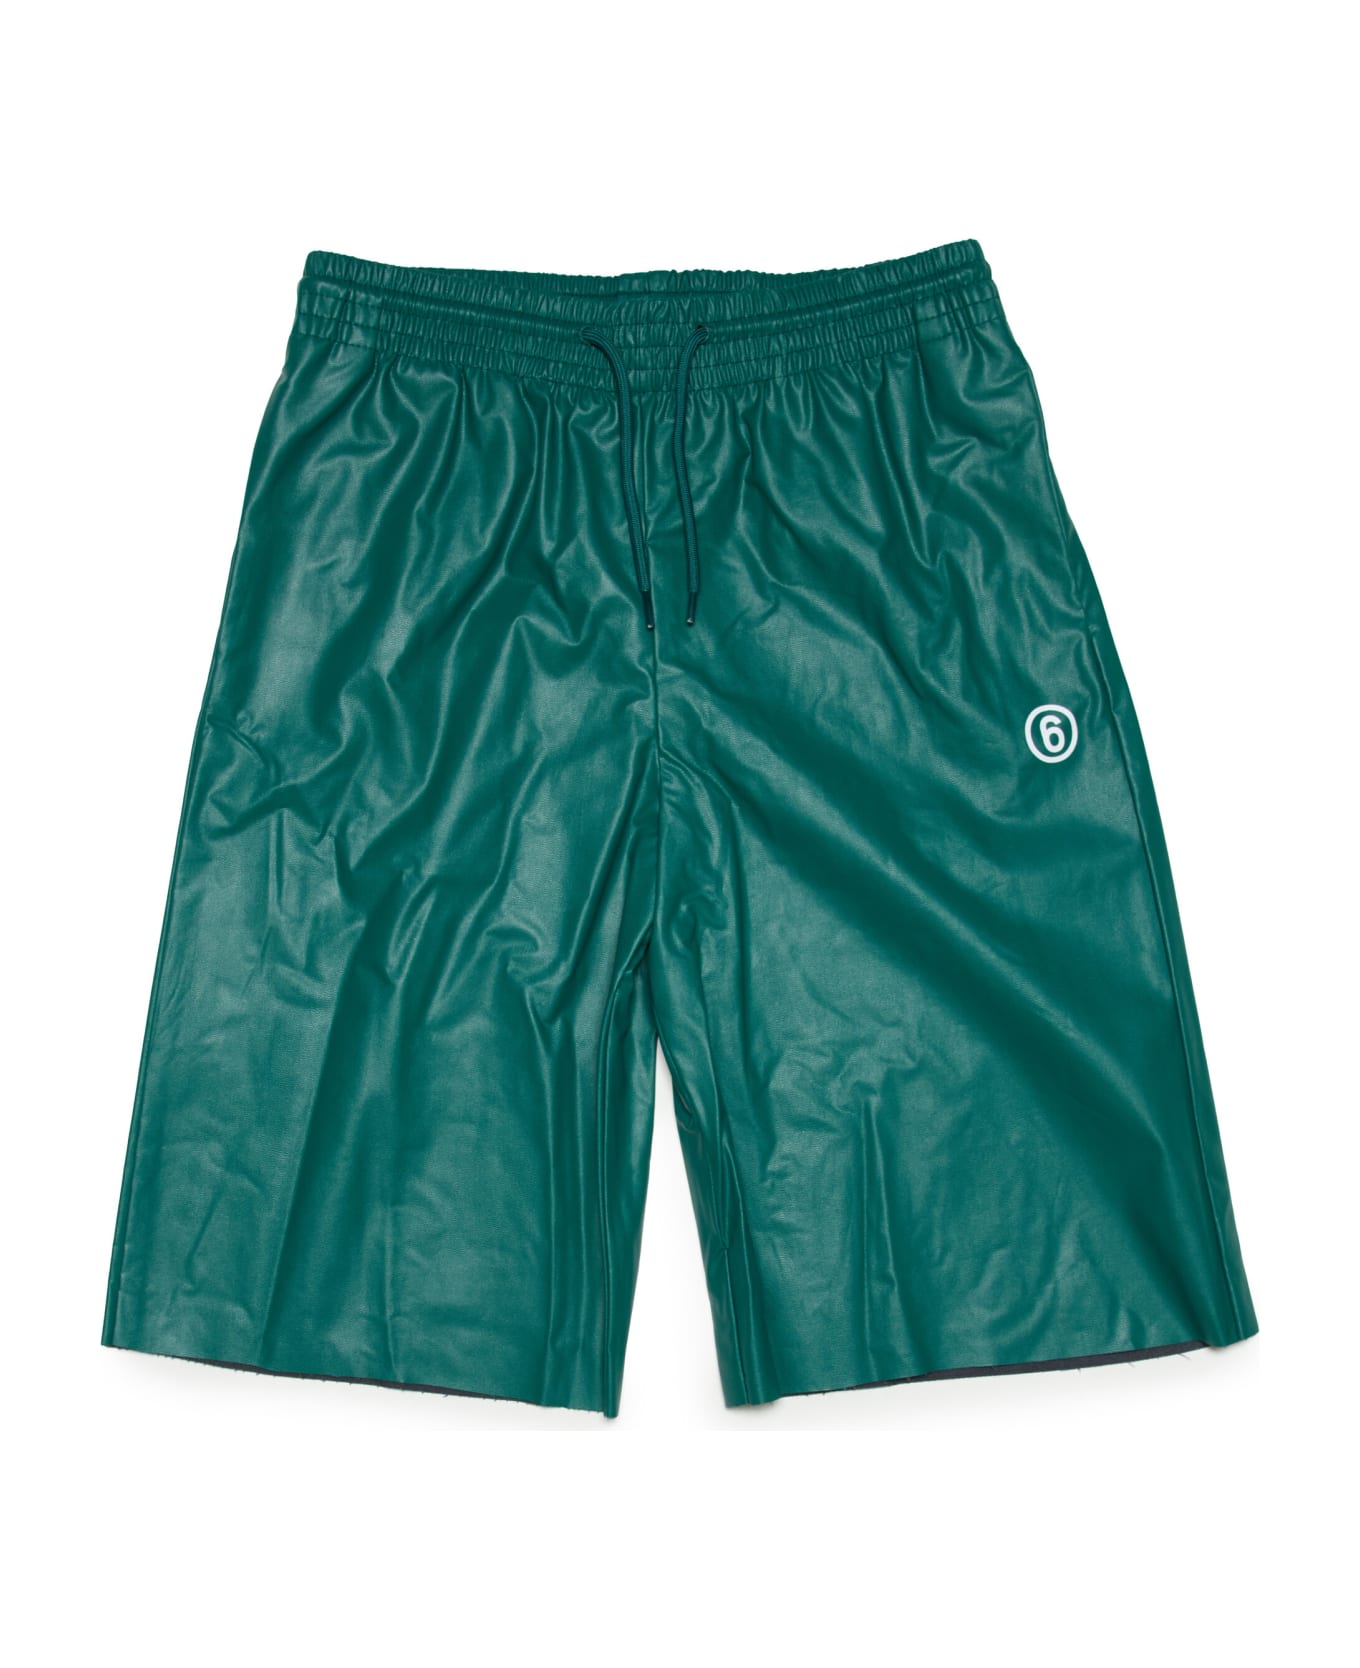 MM6 Maison Margiela Mm6p68u Shorts Maison Margiela Green Fake Leather Shorts With Logo - Forest green